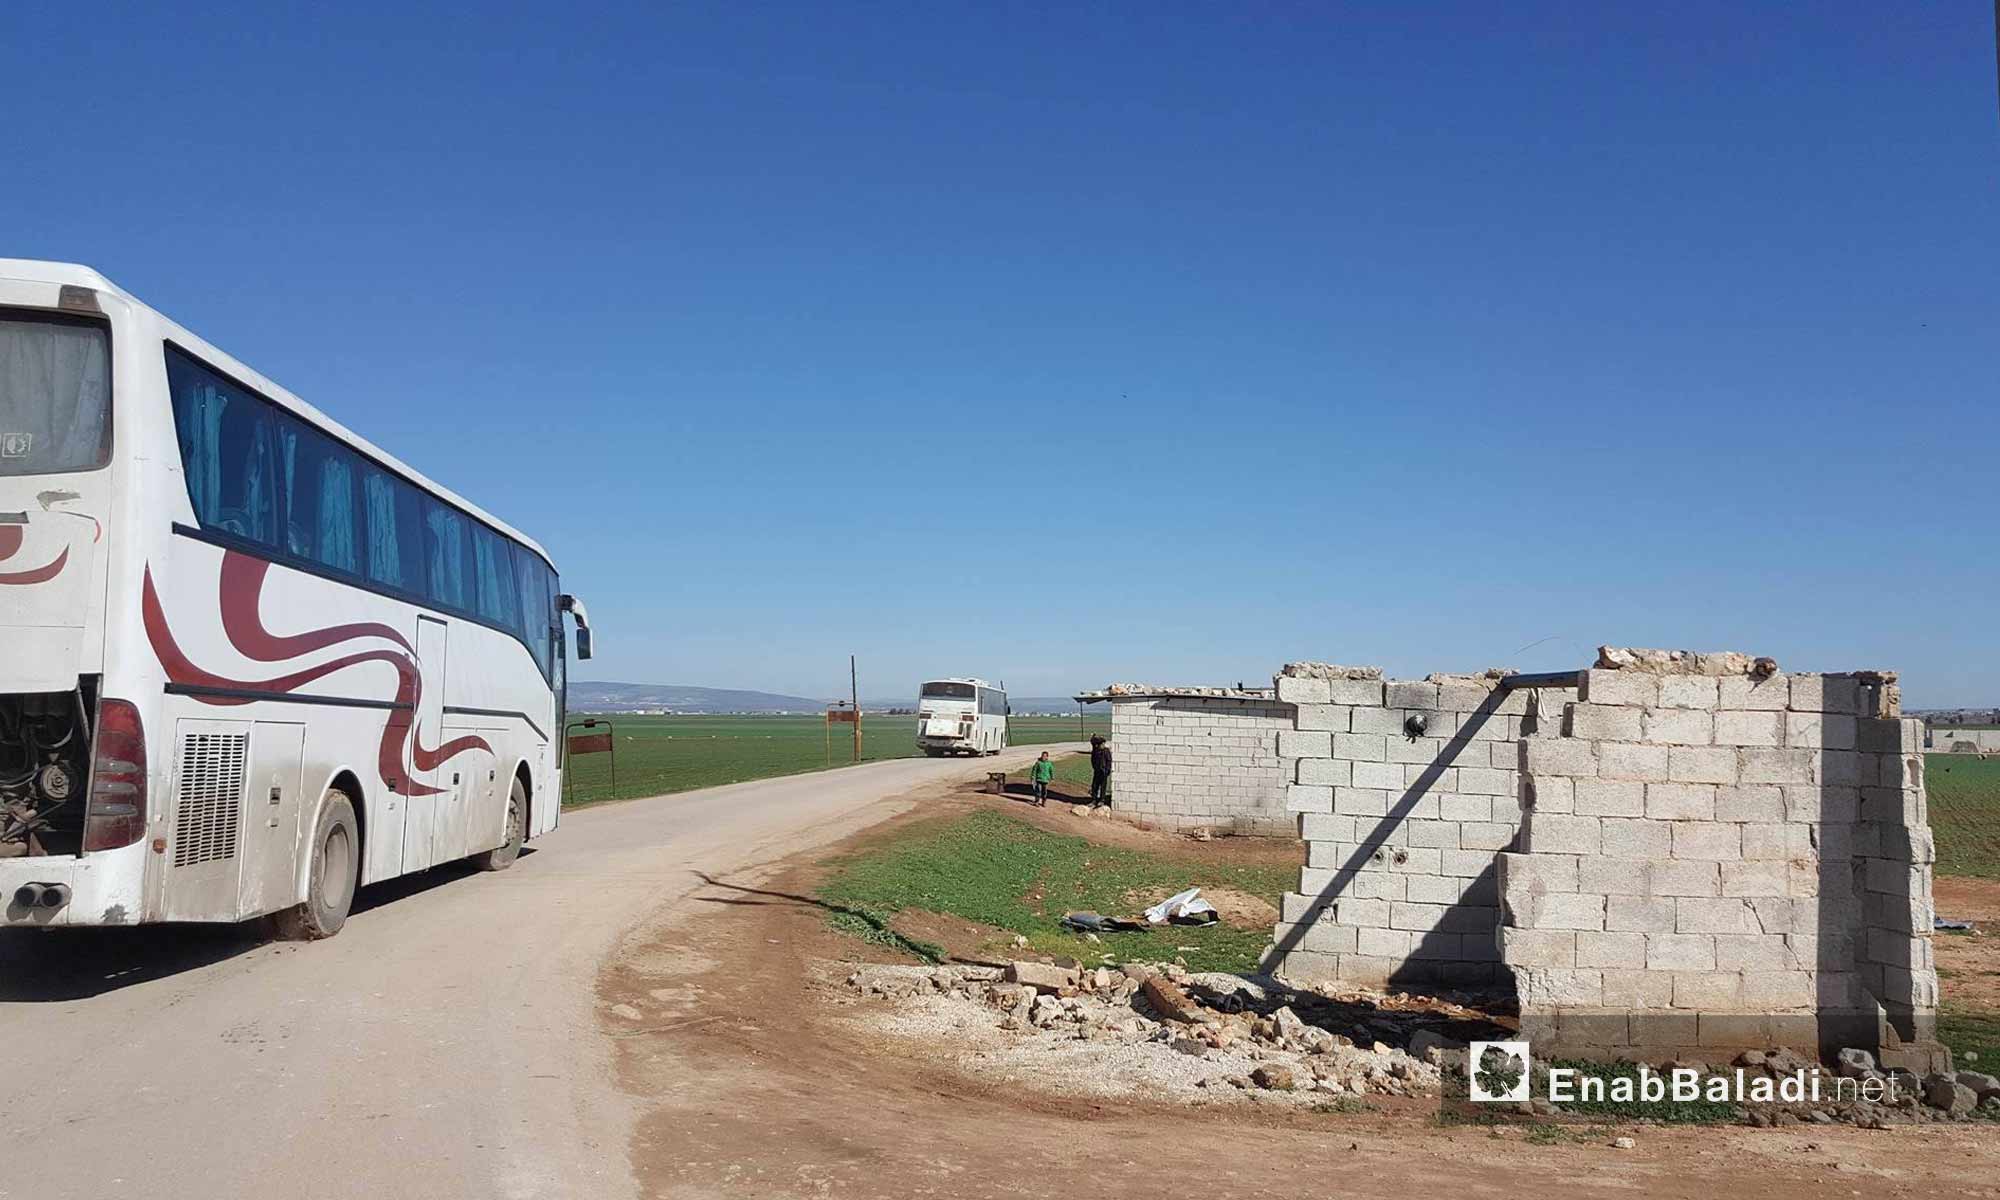 وصول الحافلات التي تقل أهالي حي الوعر إلى ريف حلب الشمالي - 10 آذار 2017 - (عنب بلدي)وصول الحافلات التي تقل أهالي حي الوعر إلى ريف حلب الشمالي - 10 آذار 2017 - (عنب بلدي)